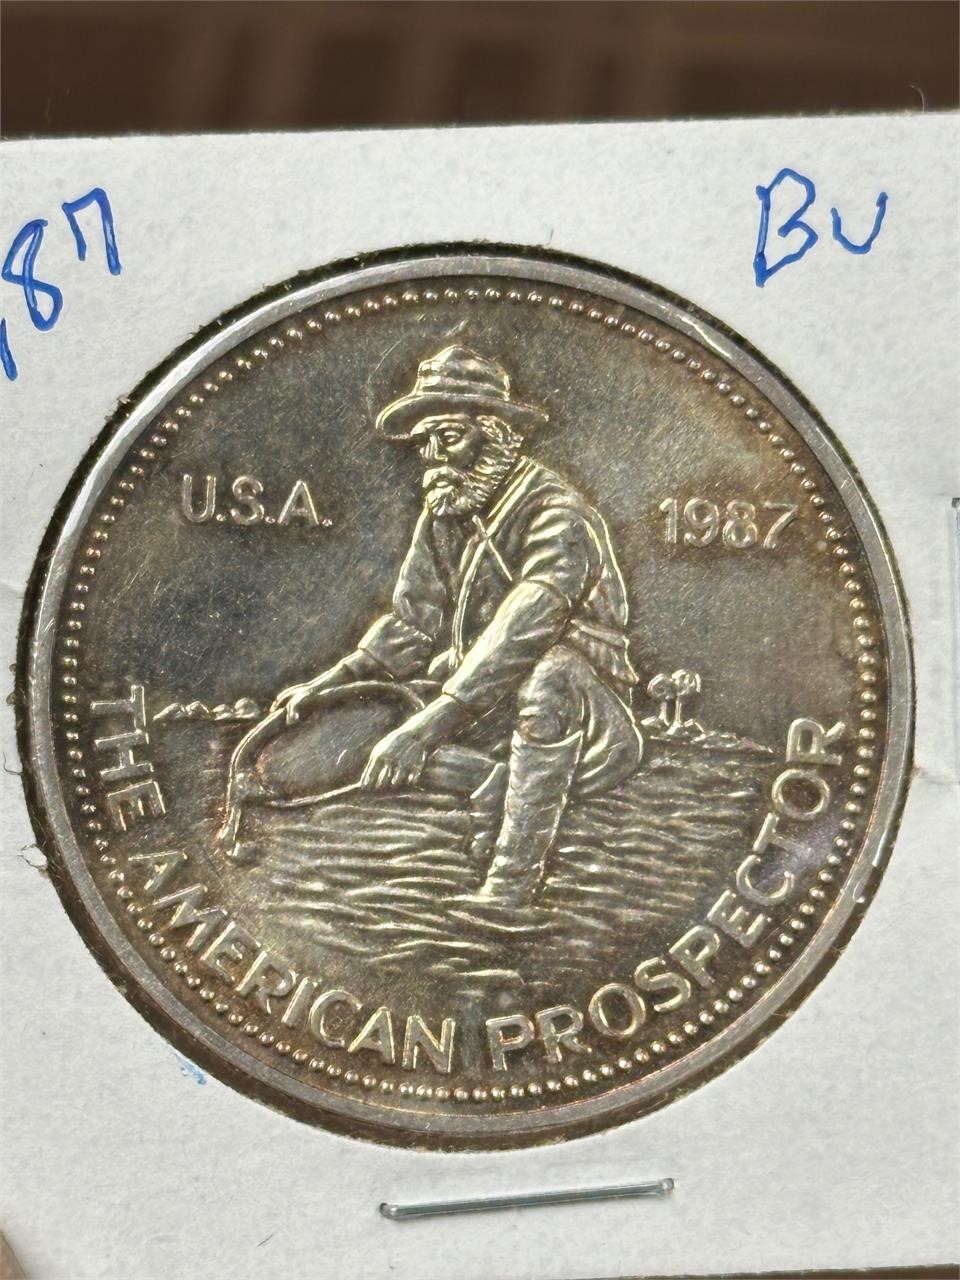 1987 .999 1oz Silver Coin American Prospector